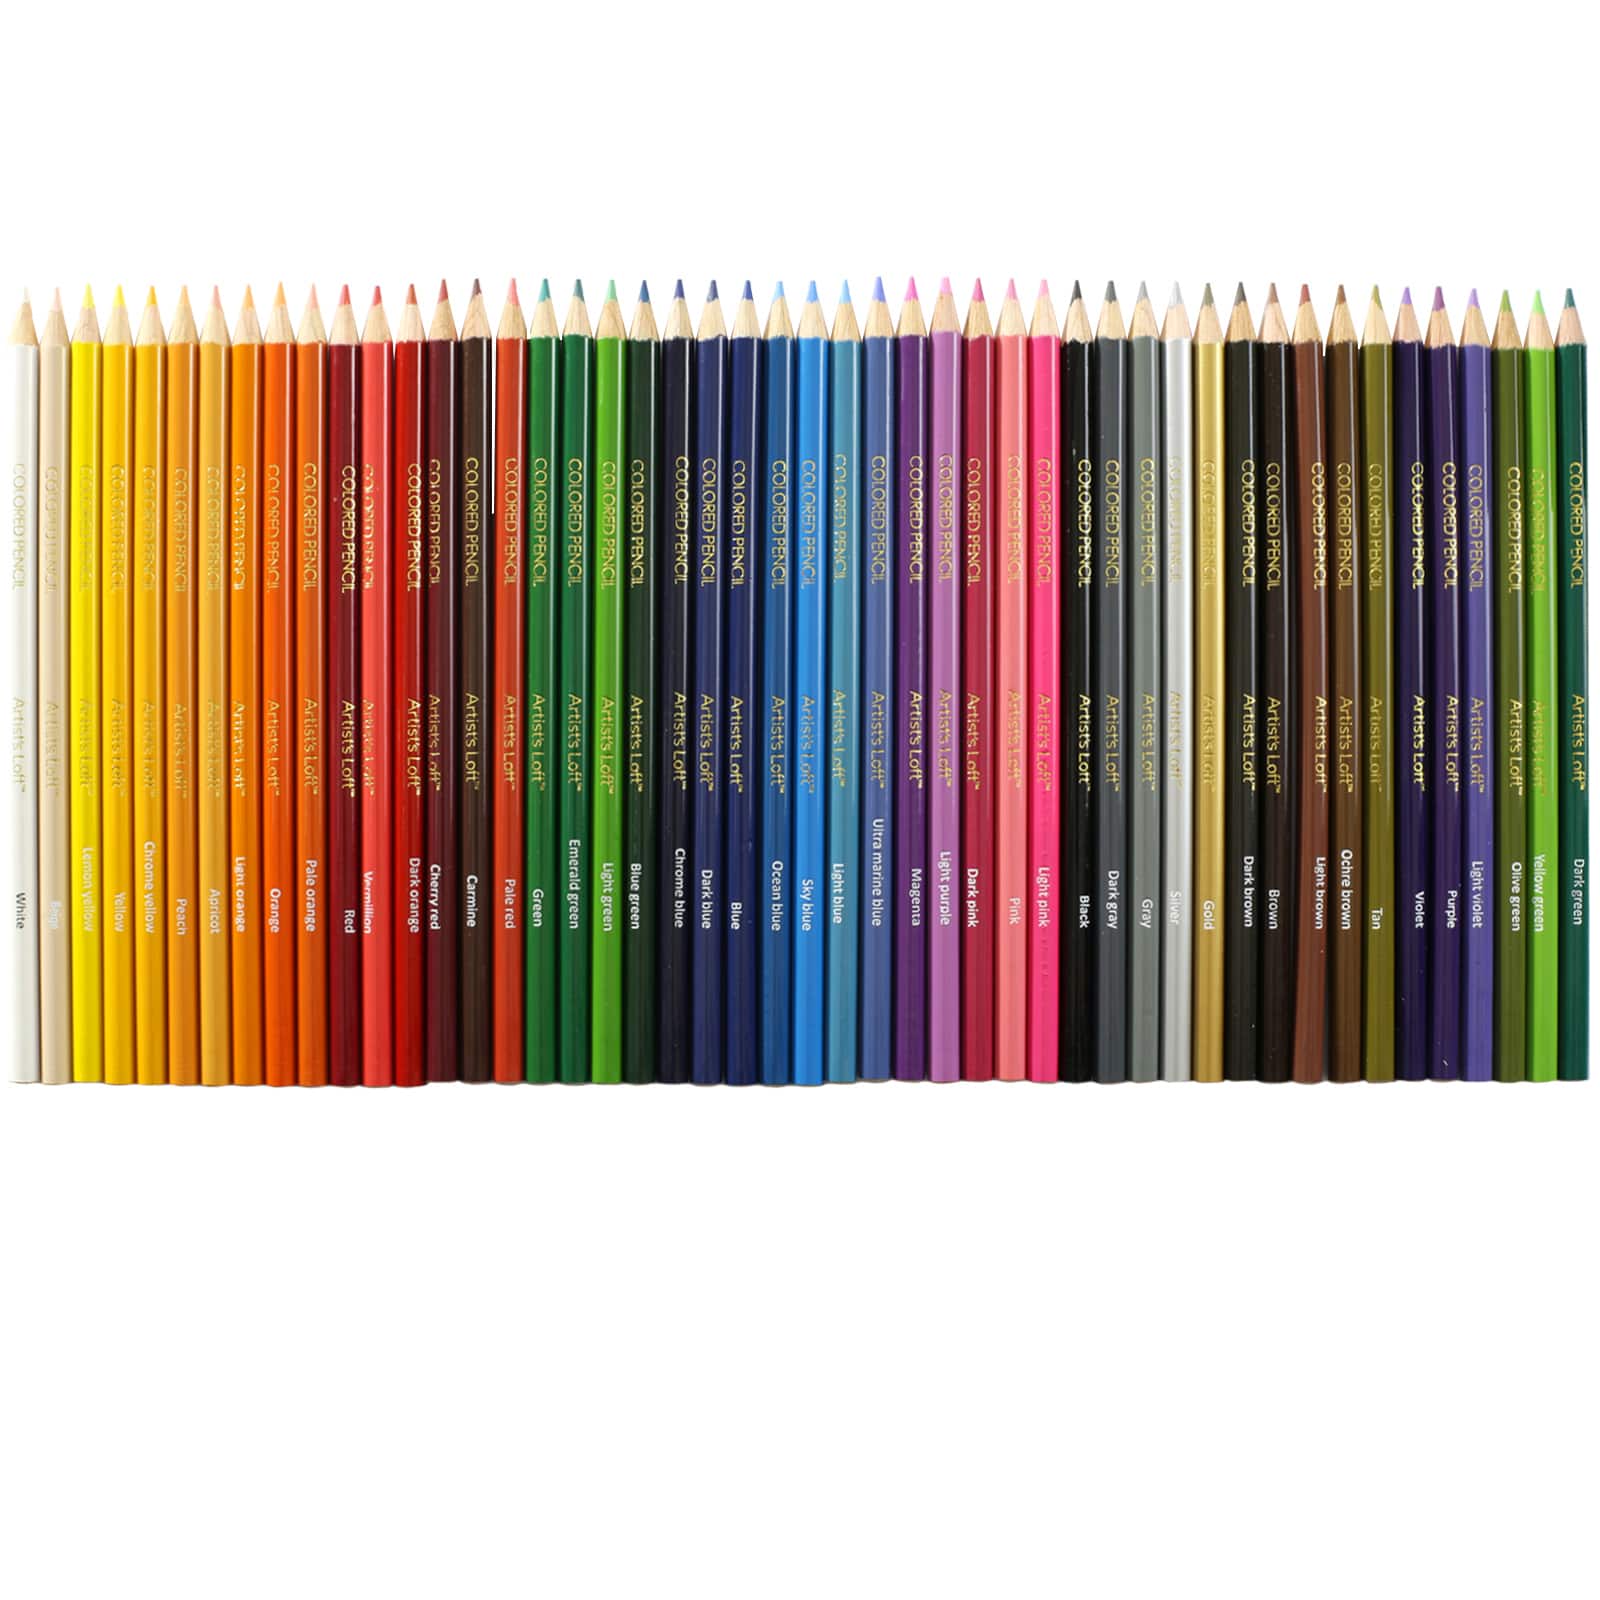 Artists Pencils, Artists Pencils